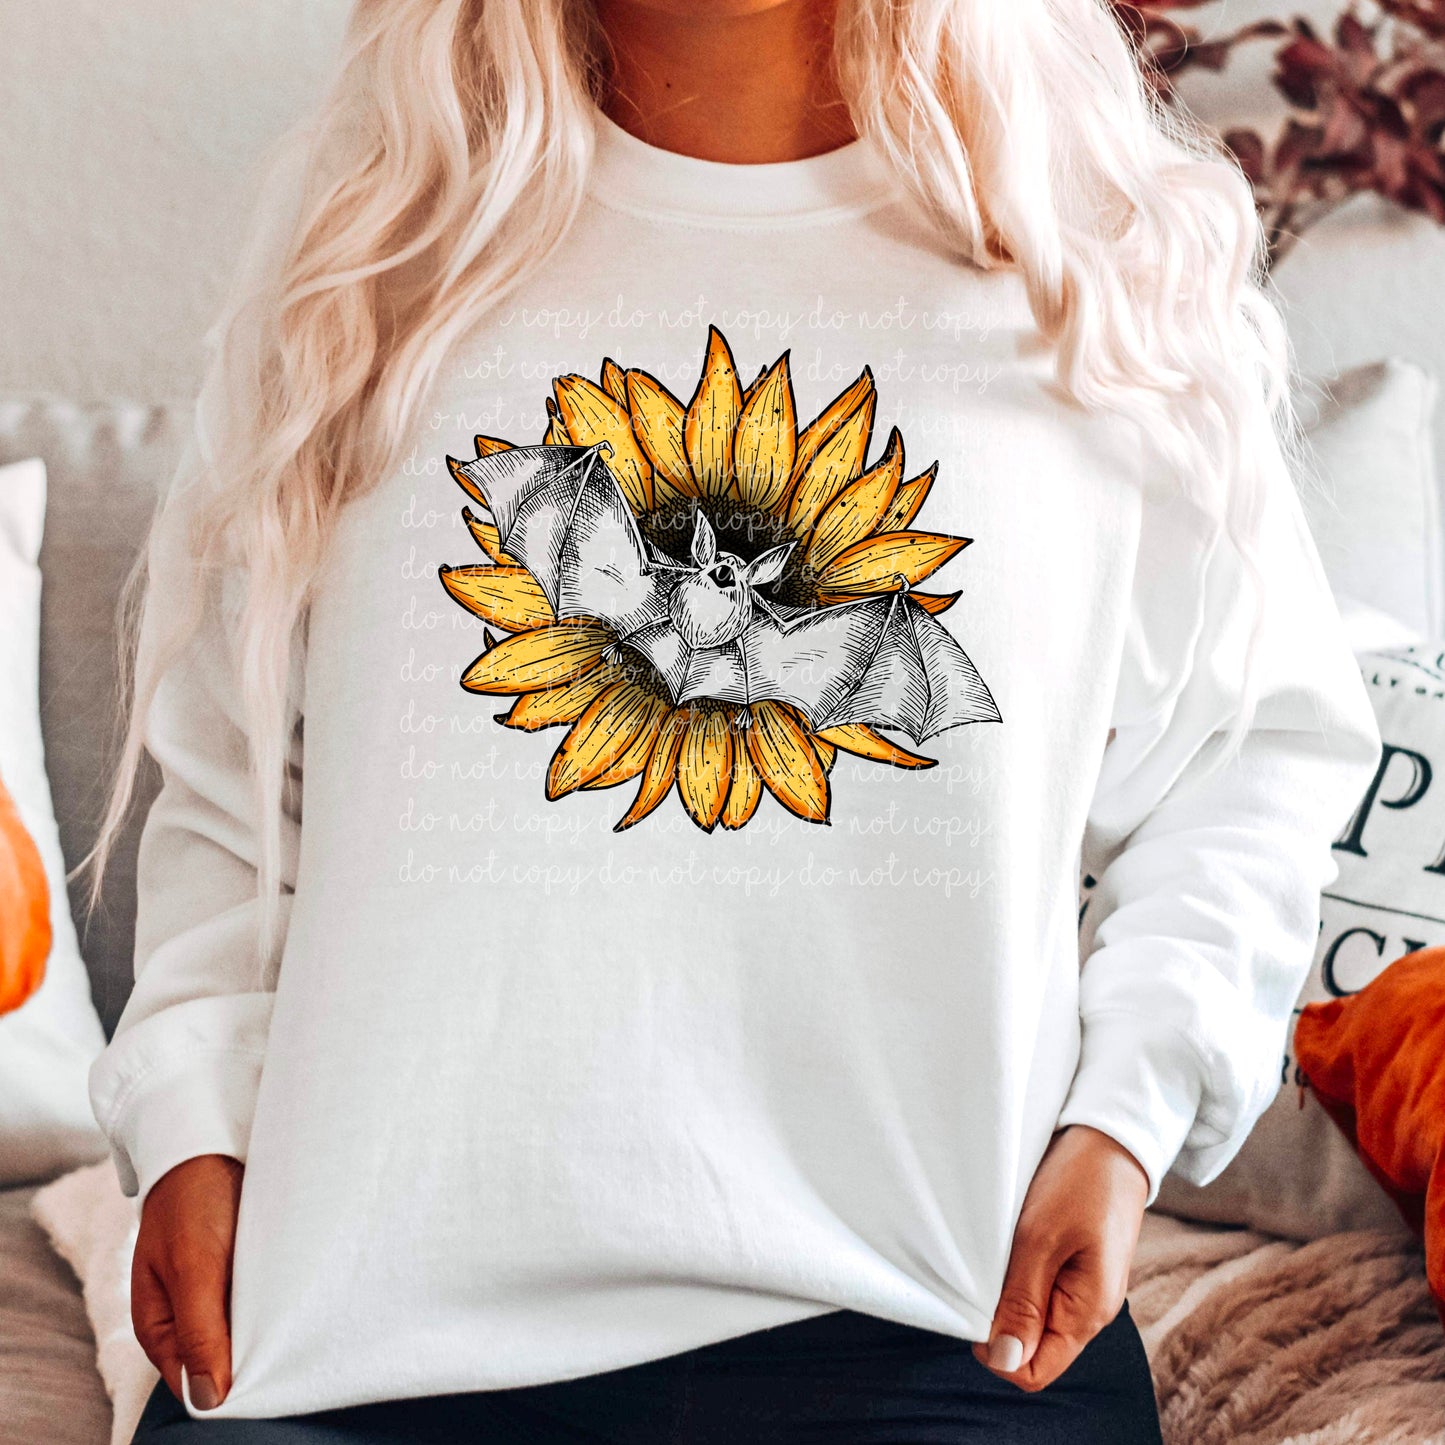 Bat Sunflower Full Color  Cerra's Shop Creates   